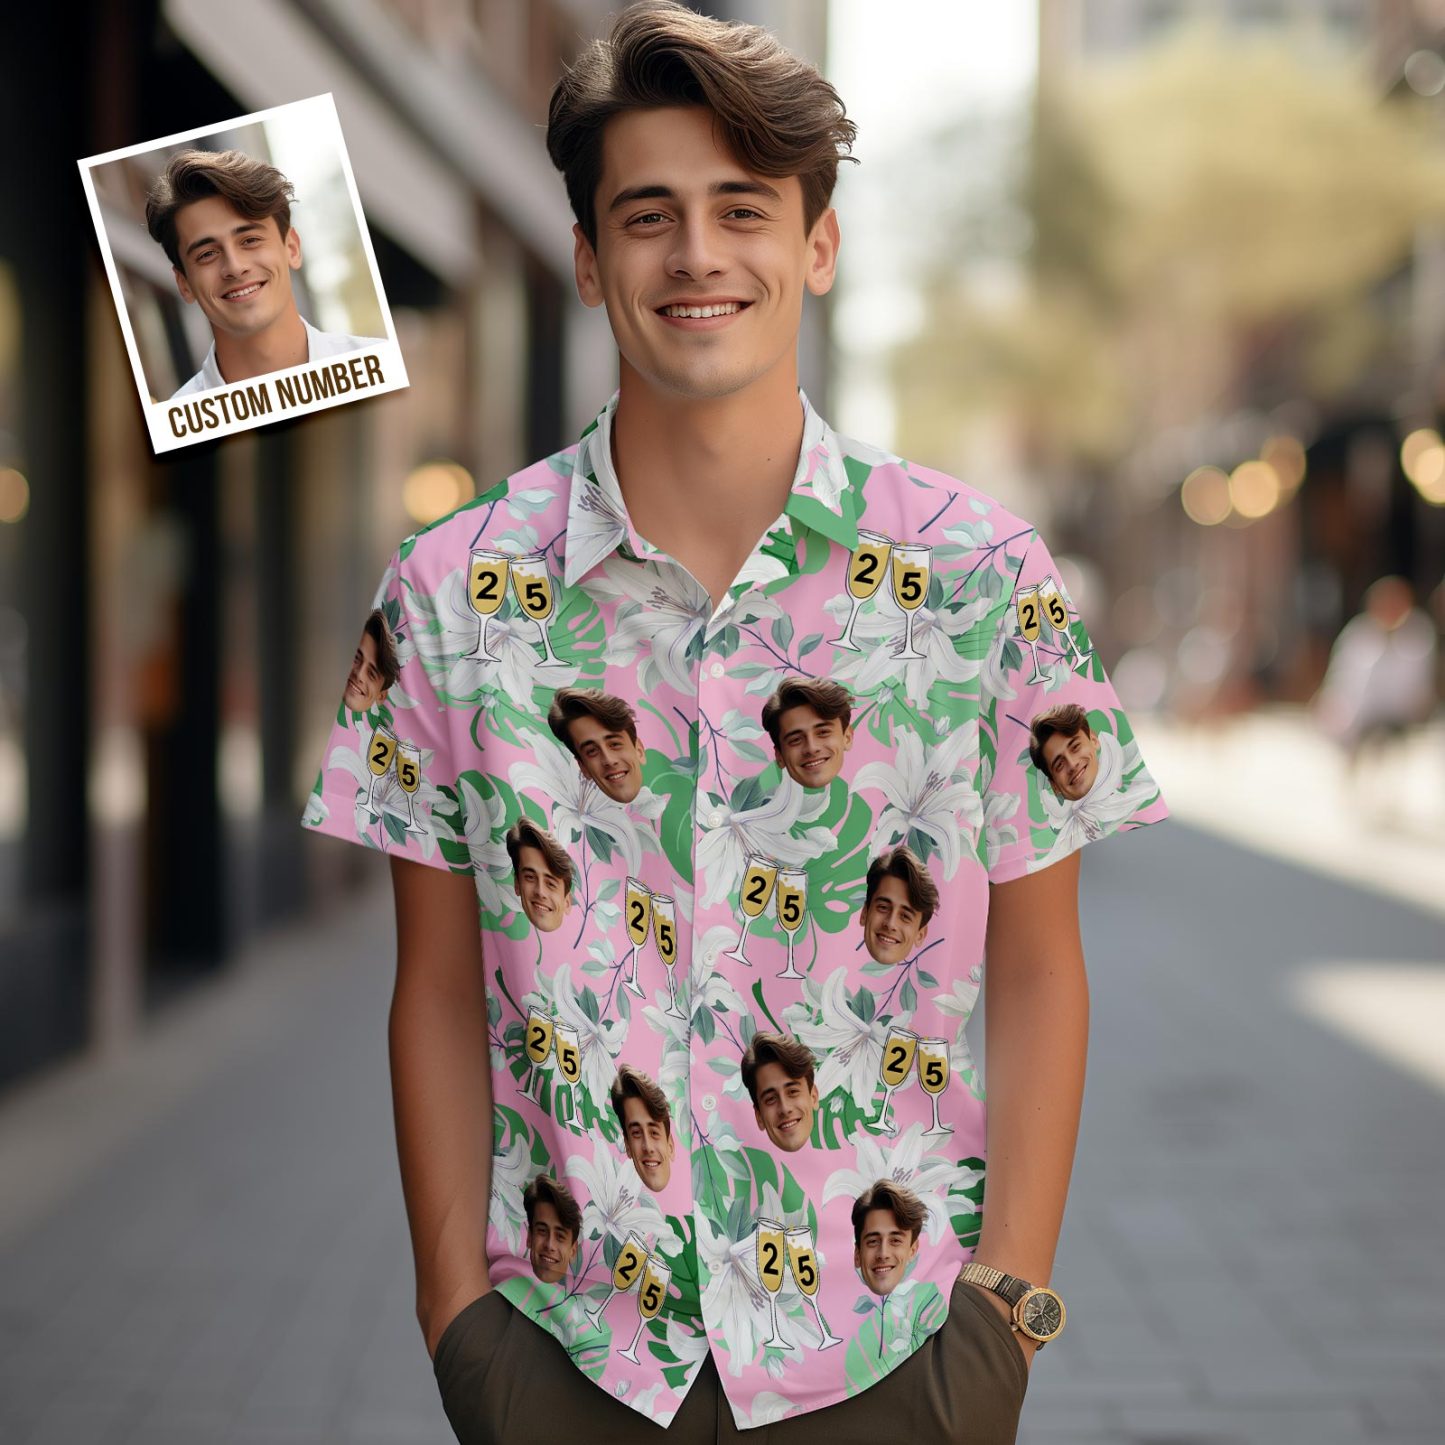 Benutzerdefinierte Gesichts-hawaii-shirt-nummer Im Weinglas, Rosa Und Grüne Ärmel, Gesicht-hawaii-shirt-geschenk Für Ihn - 